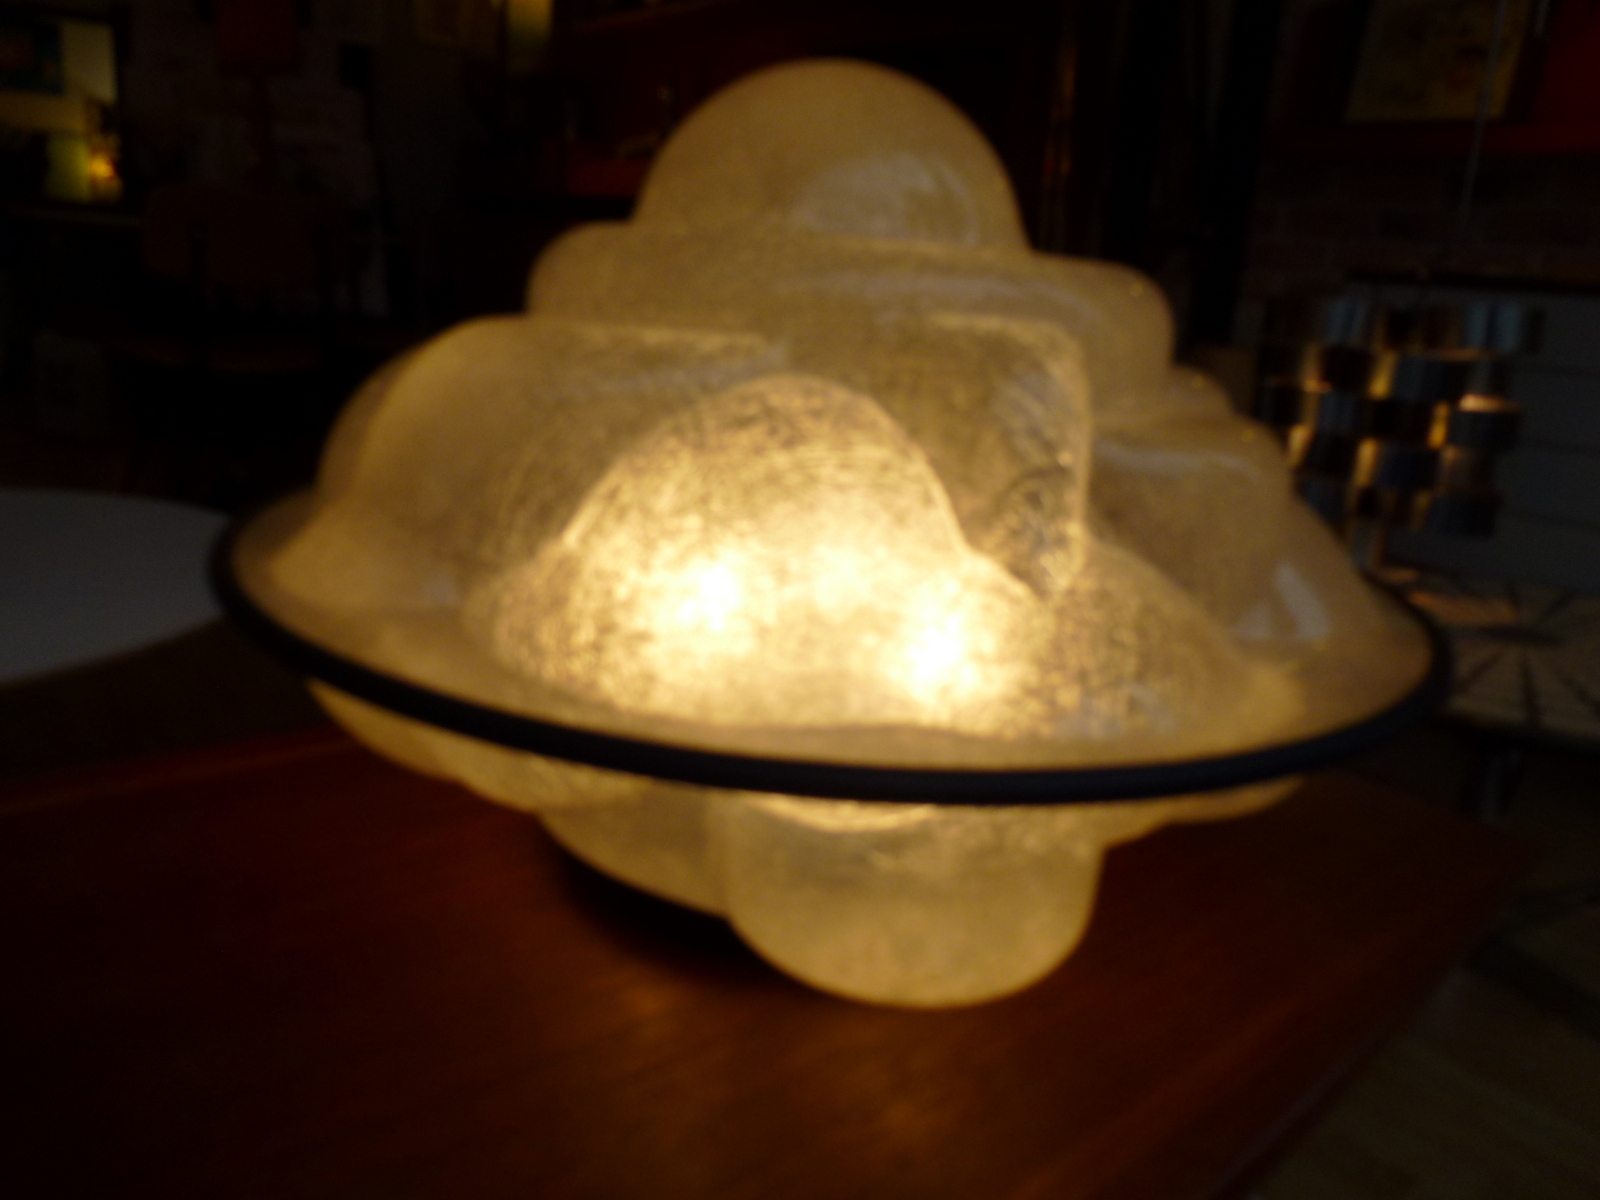 créee en 68 par Sergio Asti, la lampe profiterole,Lumière diffuse à travers sa structure en fibre de verre